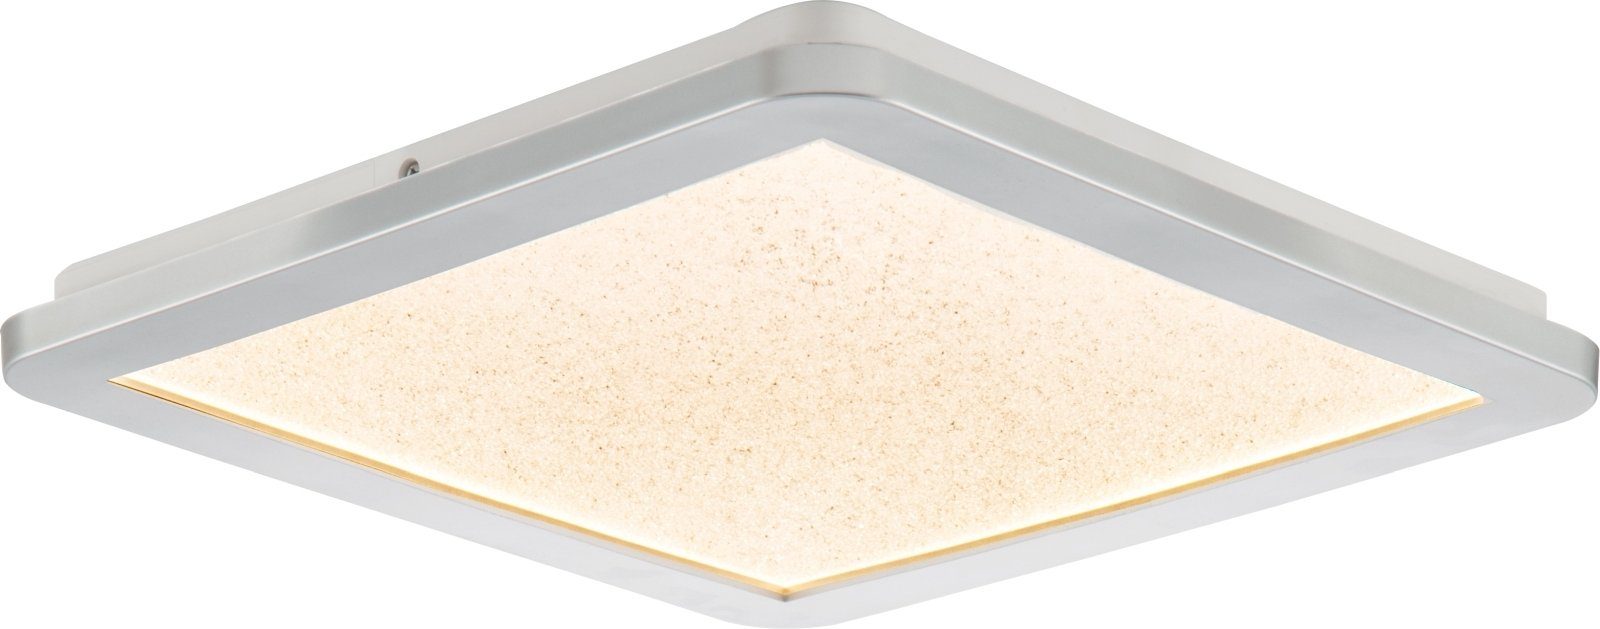 bmf-versand Deckenleuchte Nino Leuchten Deckenleuchte LED Wohnzimmer Eckig Deckenlampe Panel